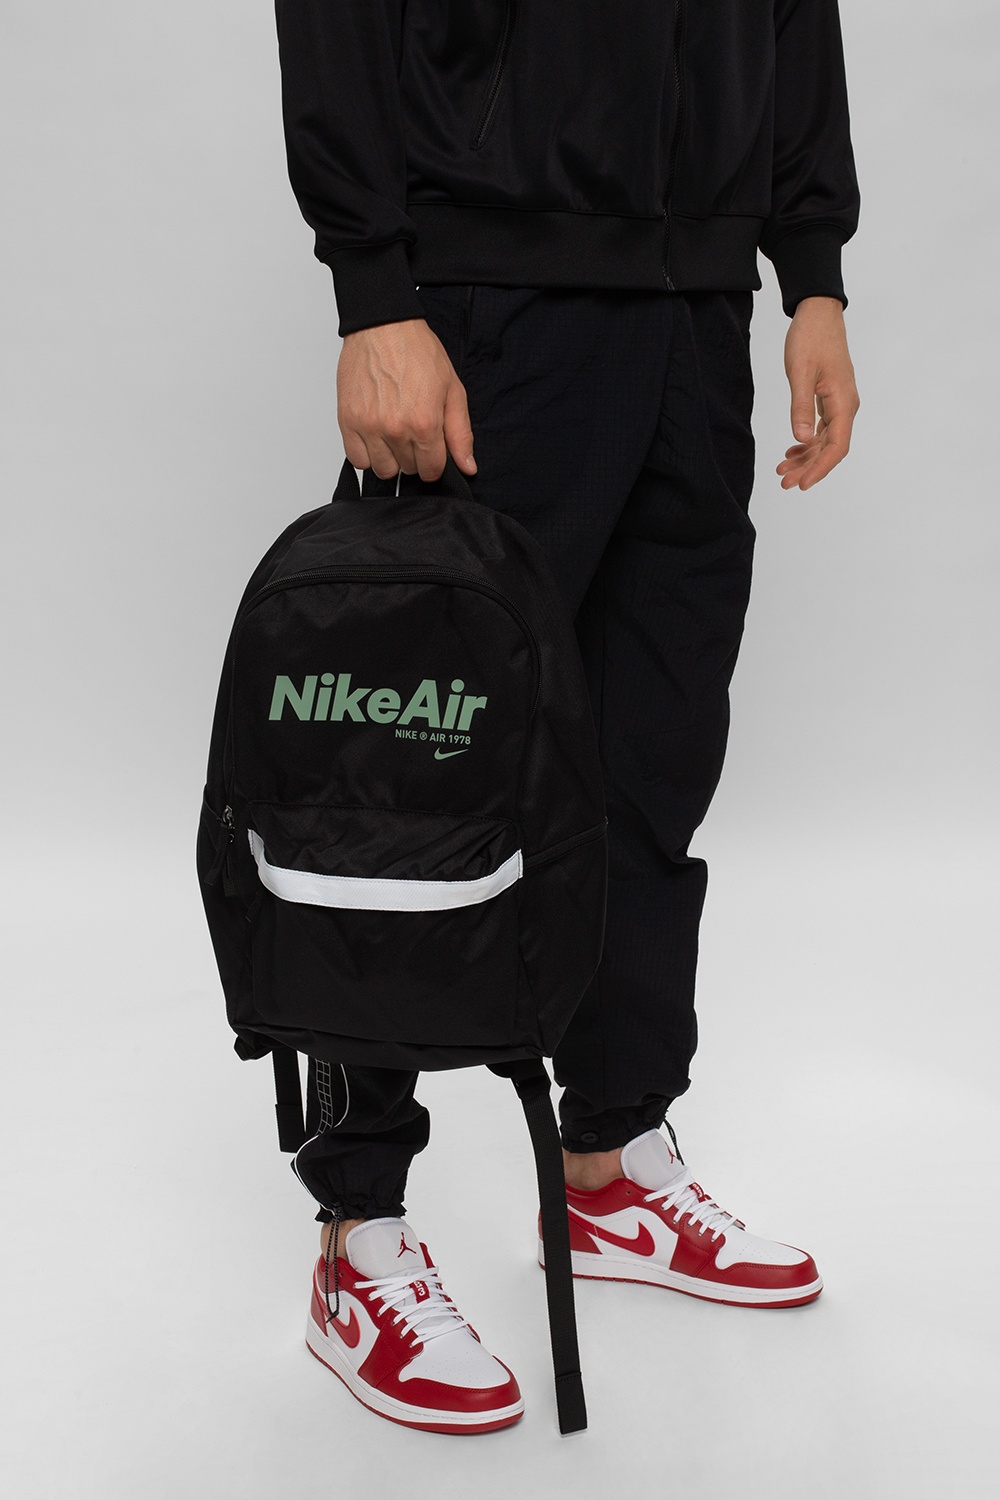 nike air 1978 backpack